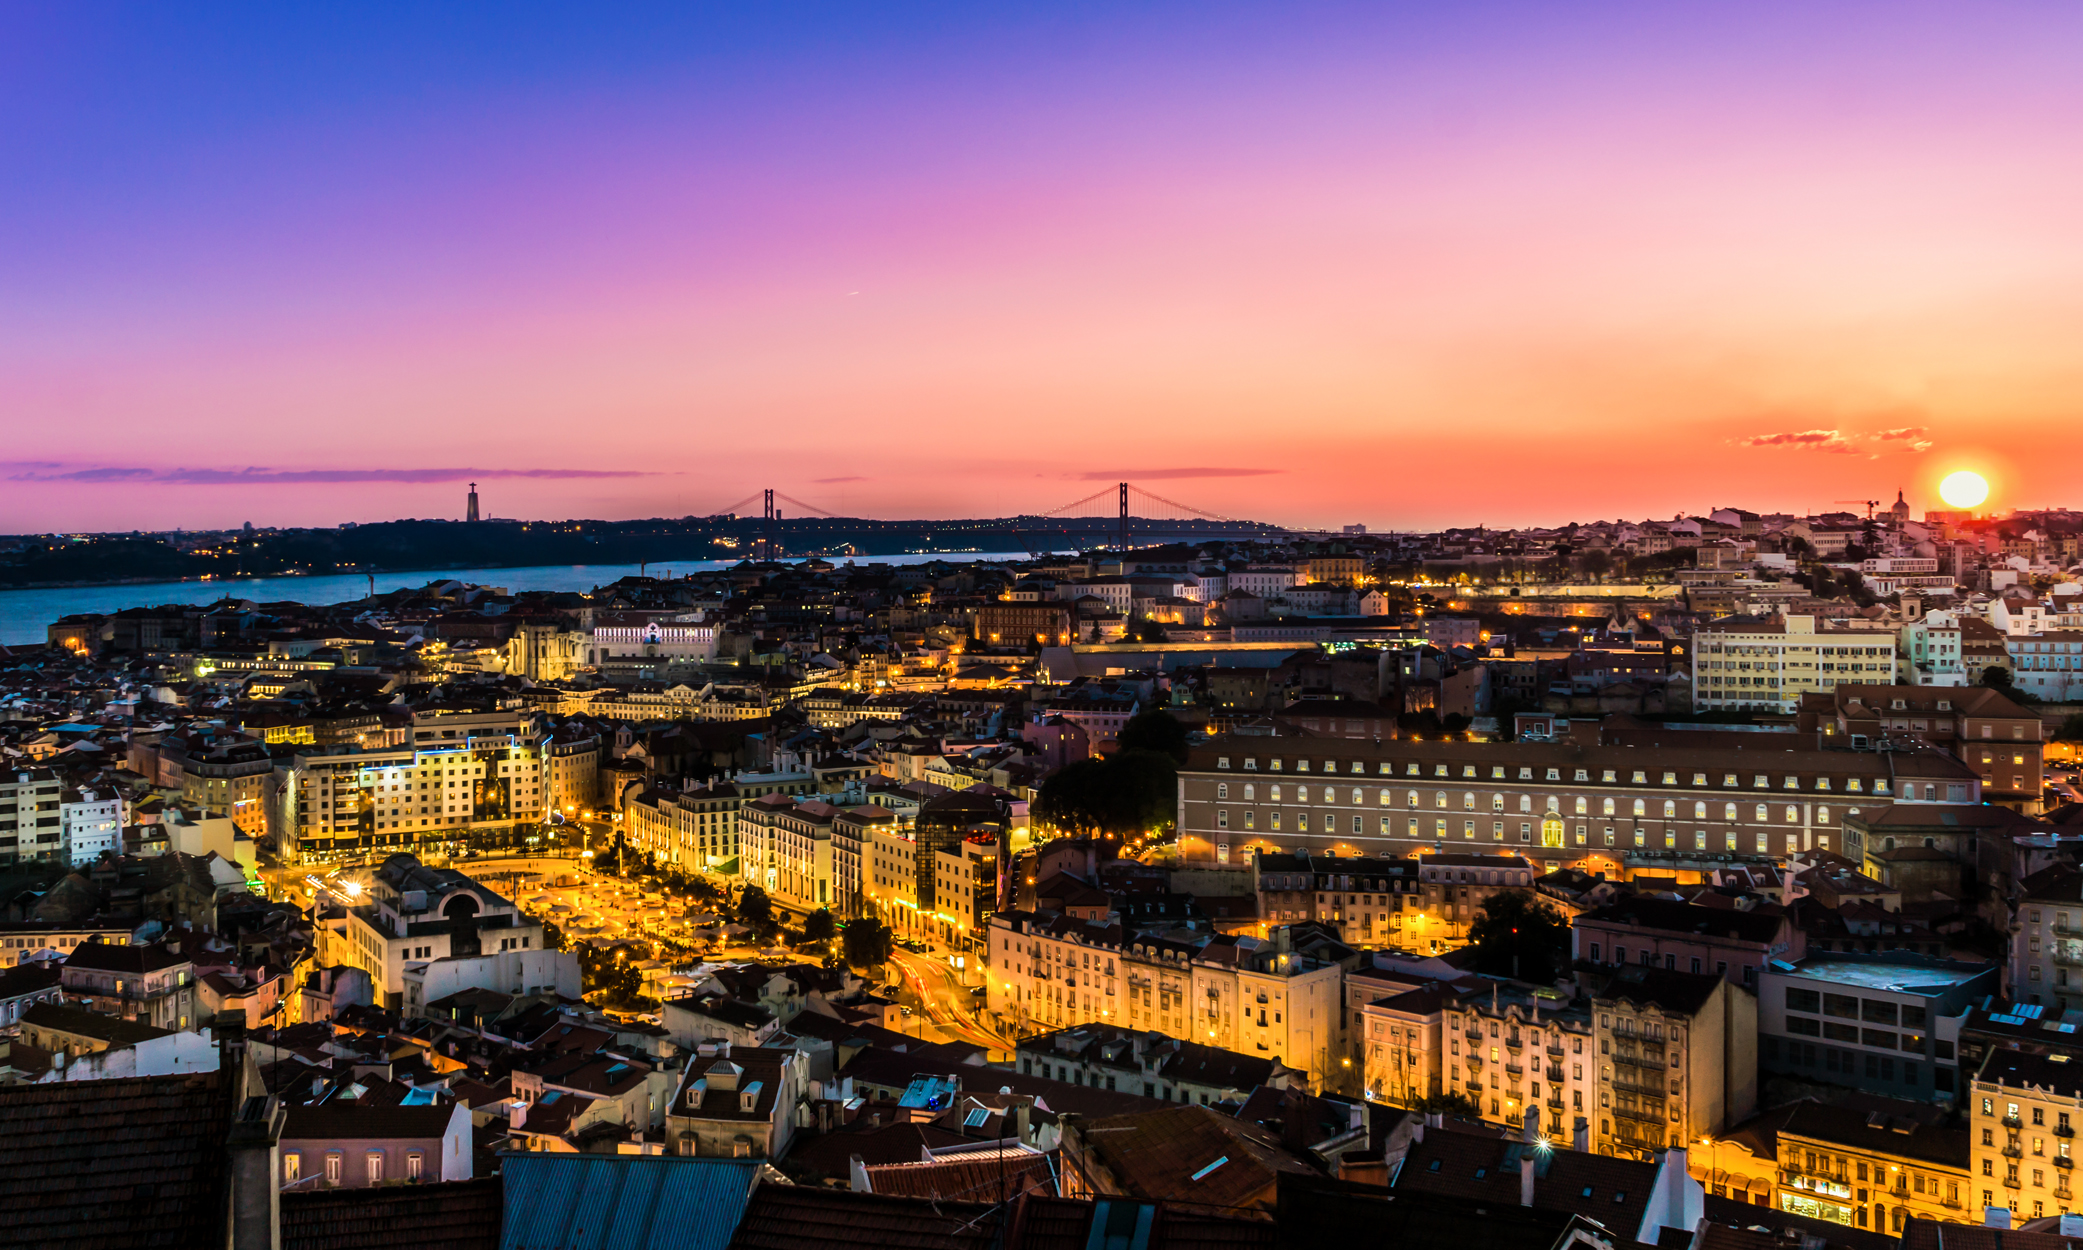 葡萄牙黄金签证改革因更多住房法案被否决而推迟